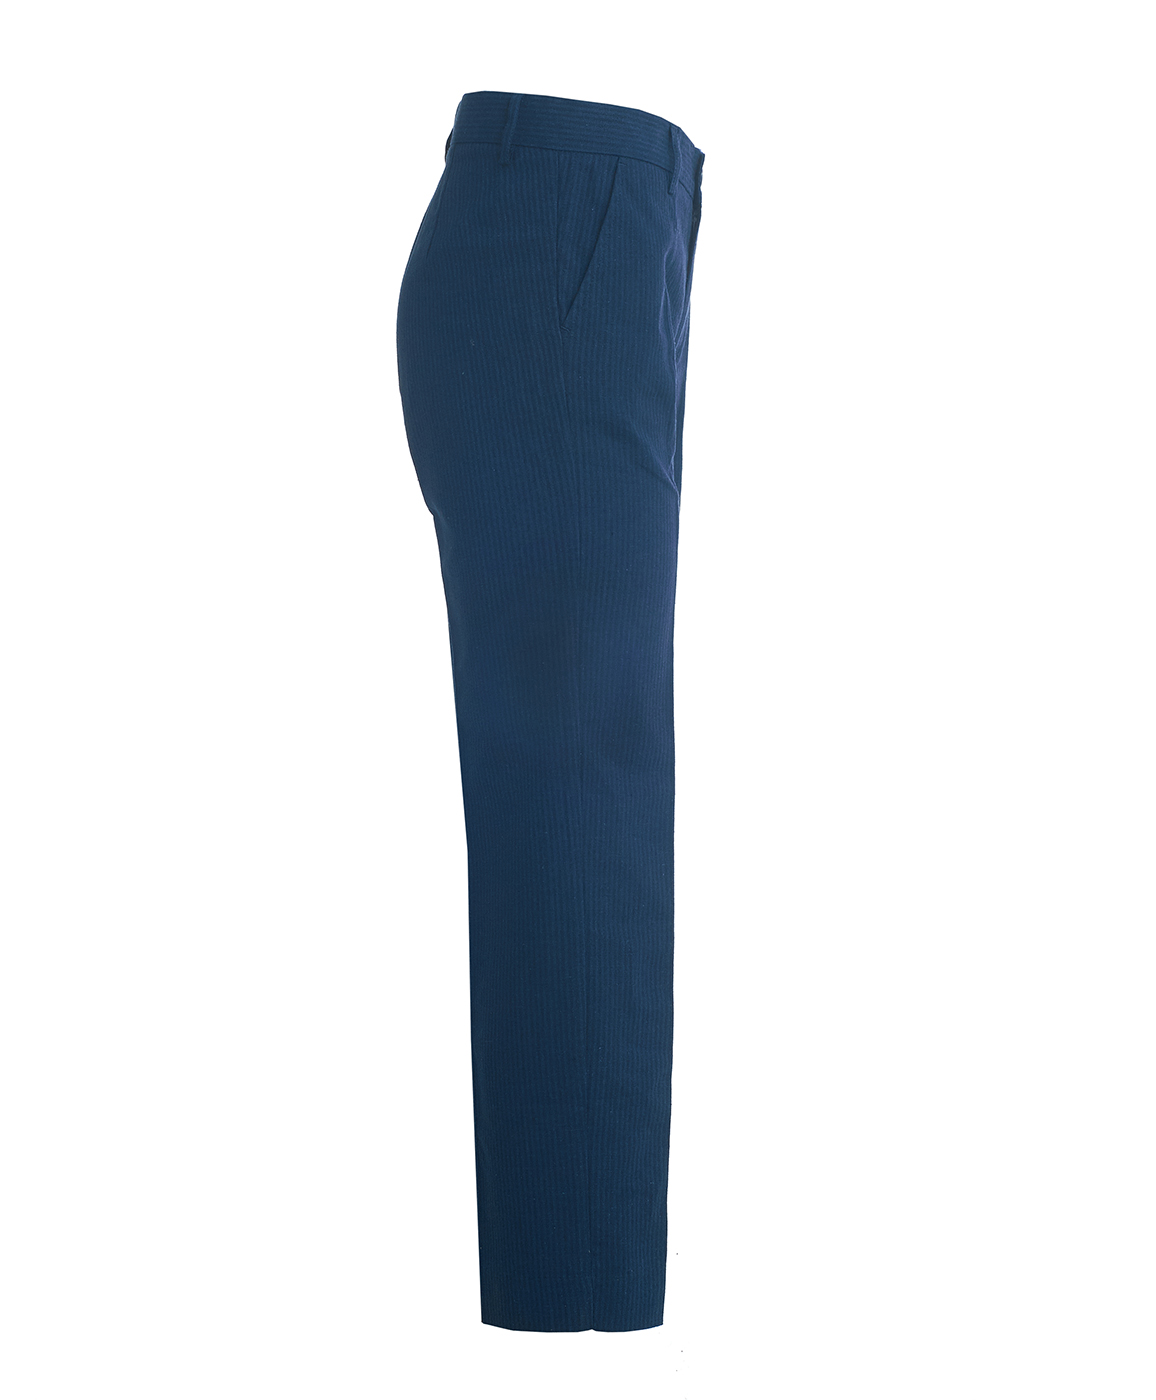 Синие брюки в полоску Button Blue 119BBBP63021005, размер 146, цвет синий - фото 2